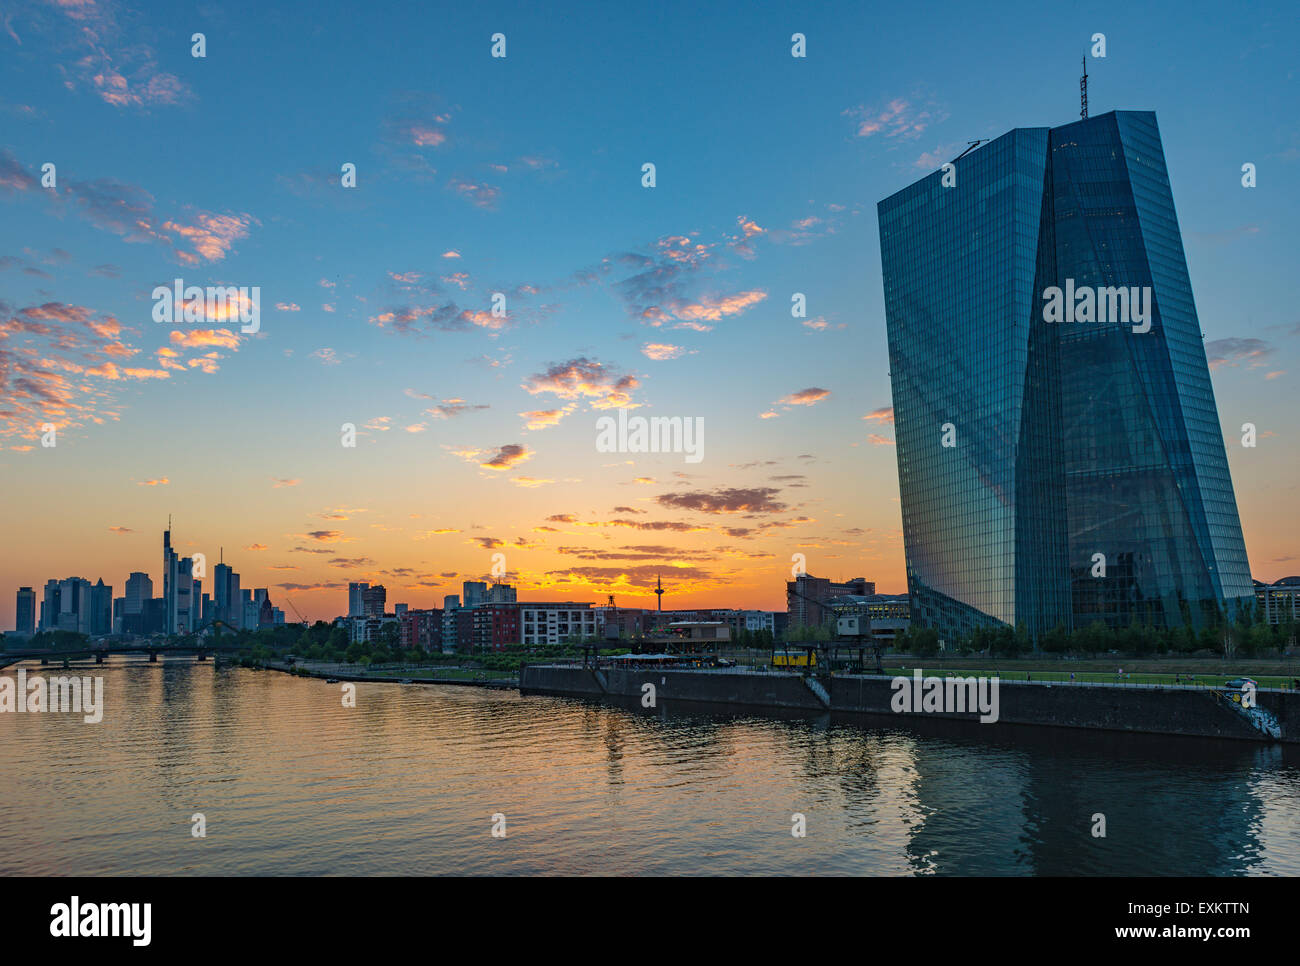 La nouvelle Banque centrale européenne, BCE, en face de la skyline at sunset, Frankfurt am Main, Hesse, Allemagne Banque D'Images